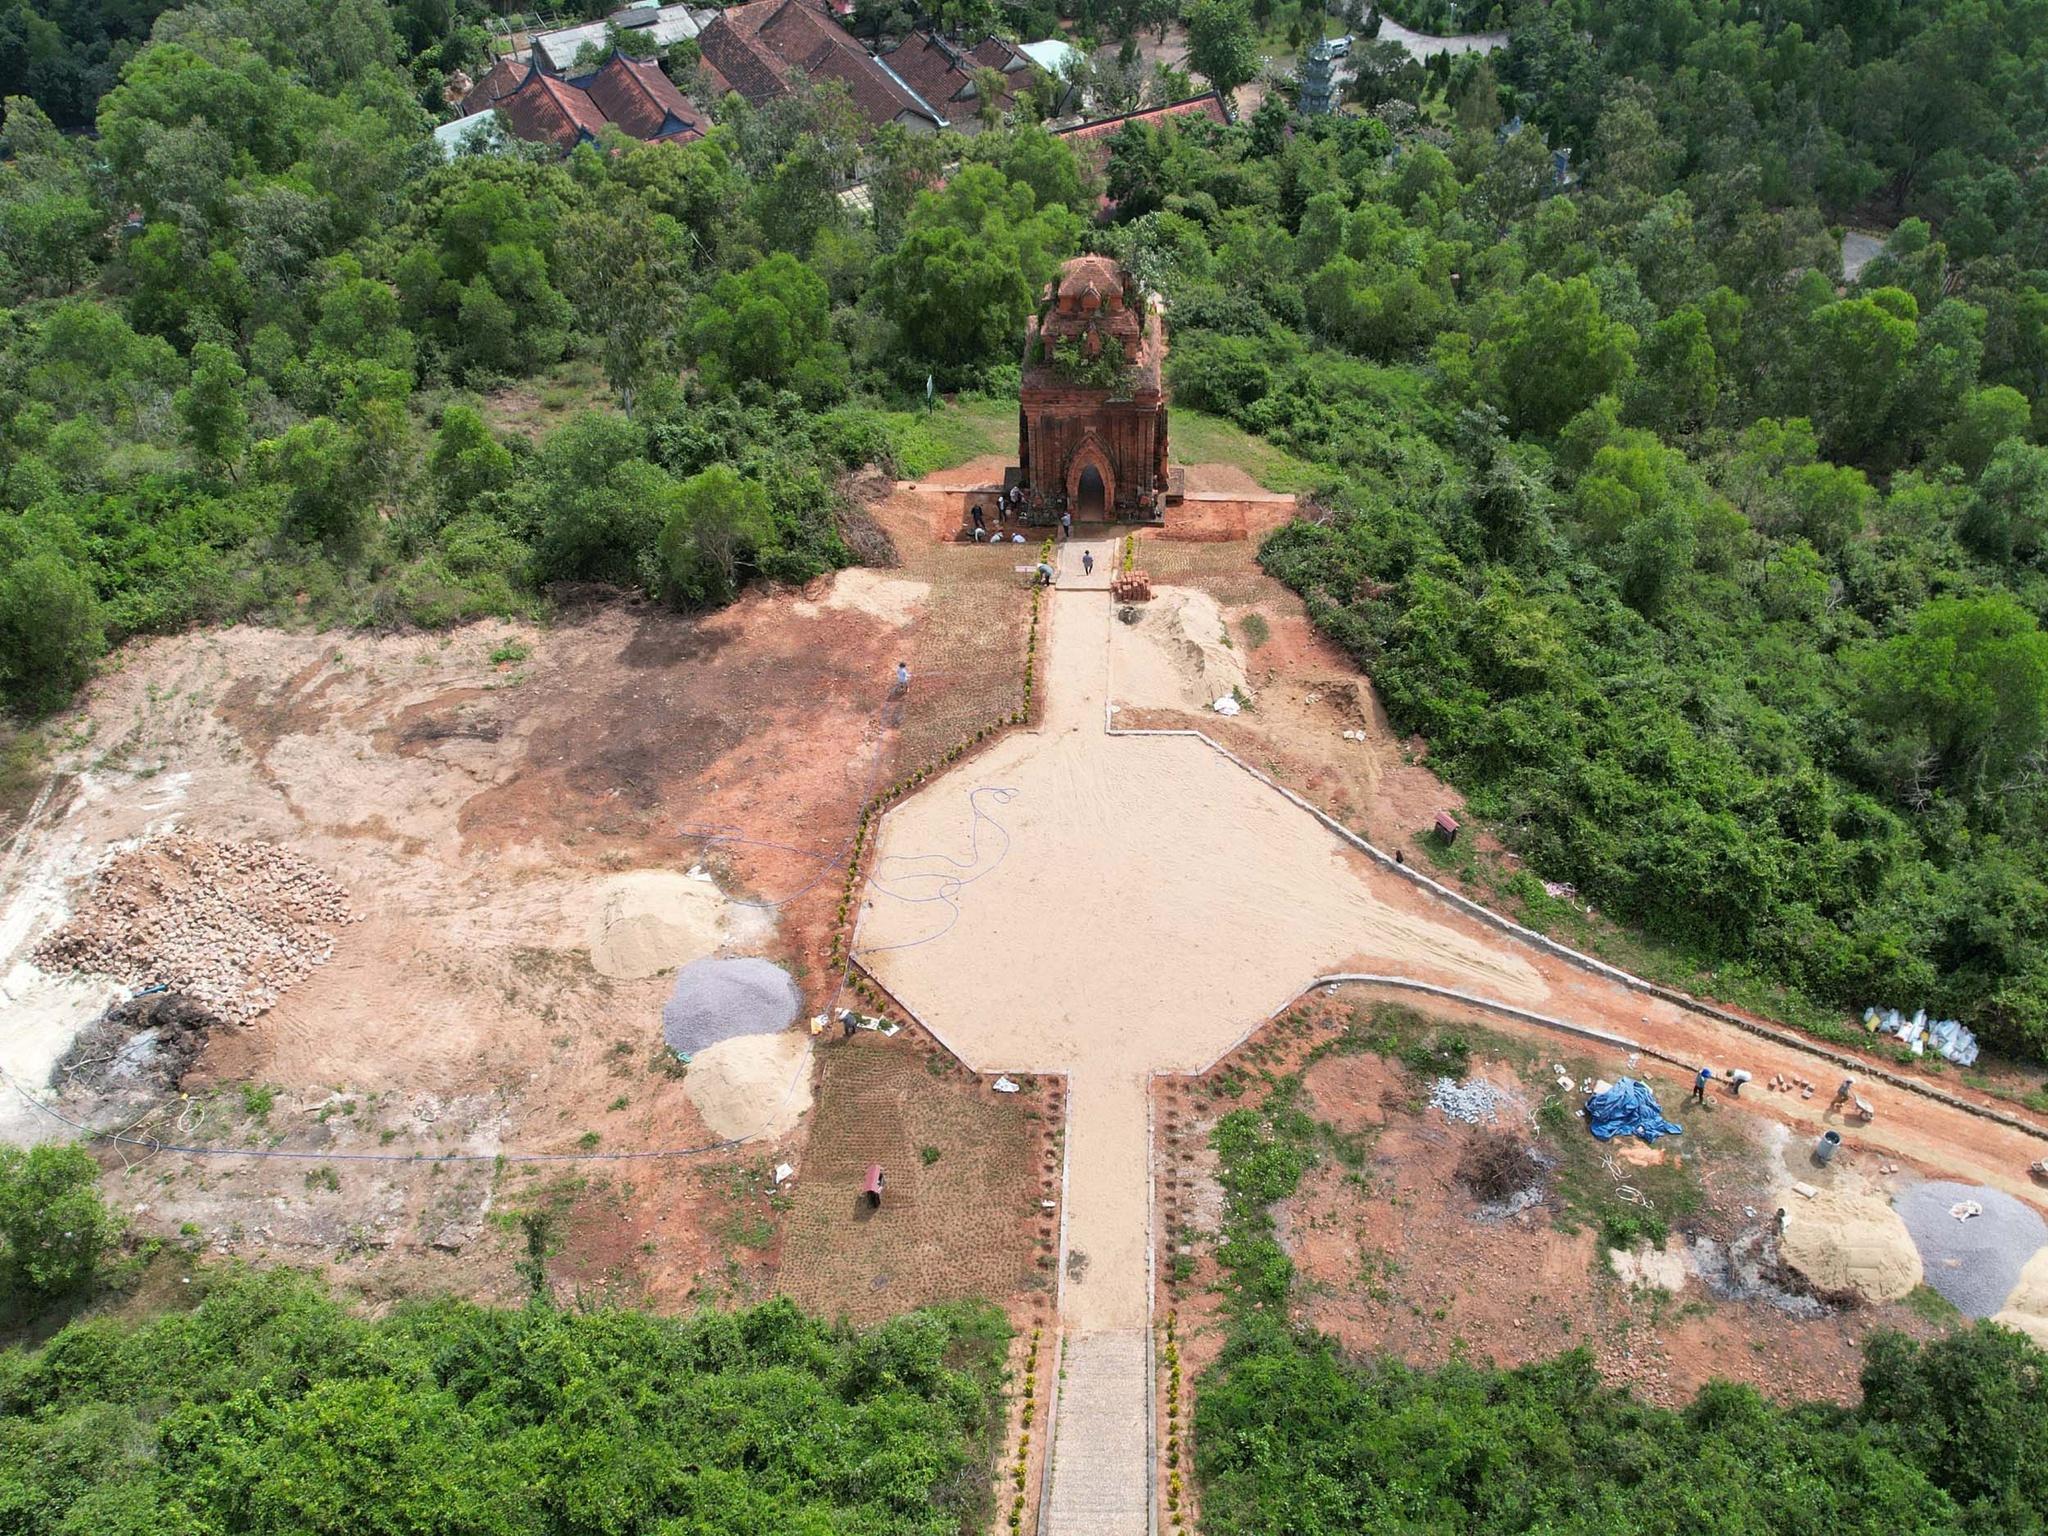 Dự án tu bổ tháp Bánh Ít ở Bình Định: Biết thi công sai vẫn cho làm? - ảnh 8